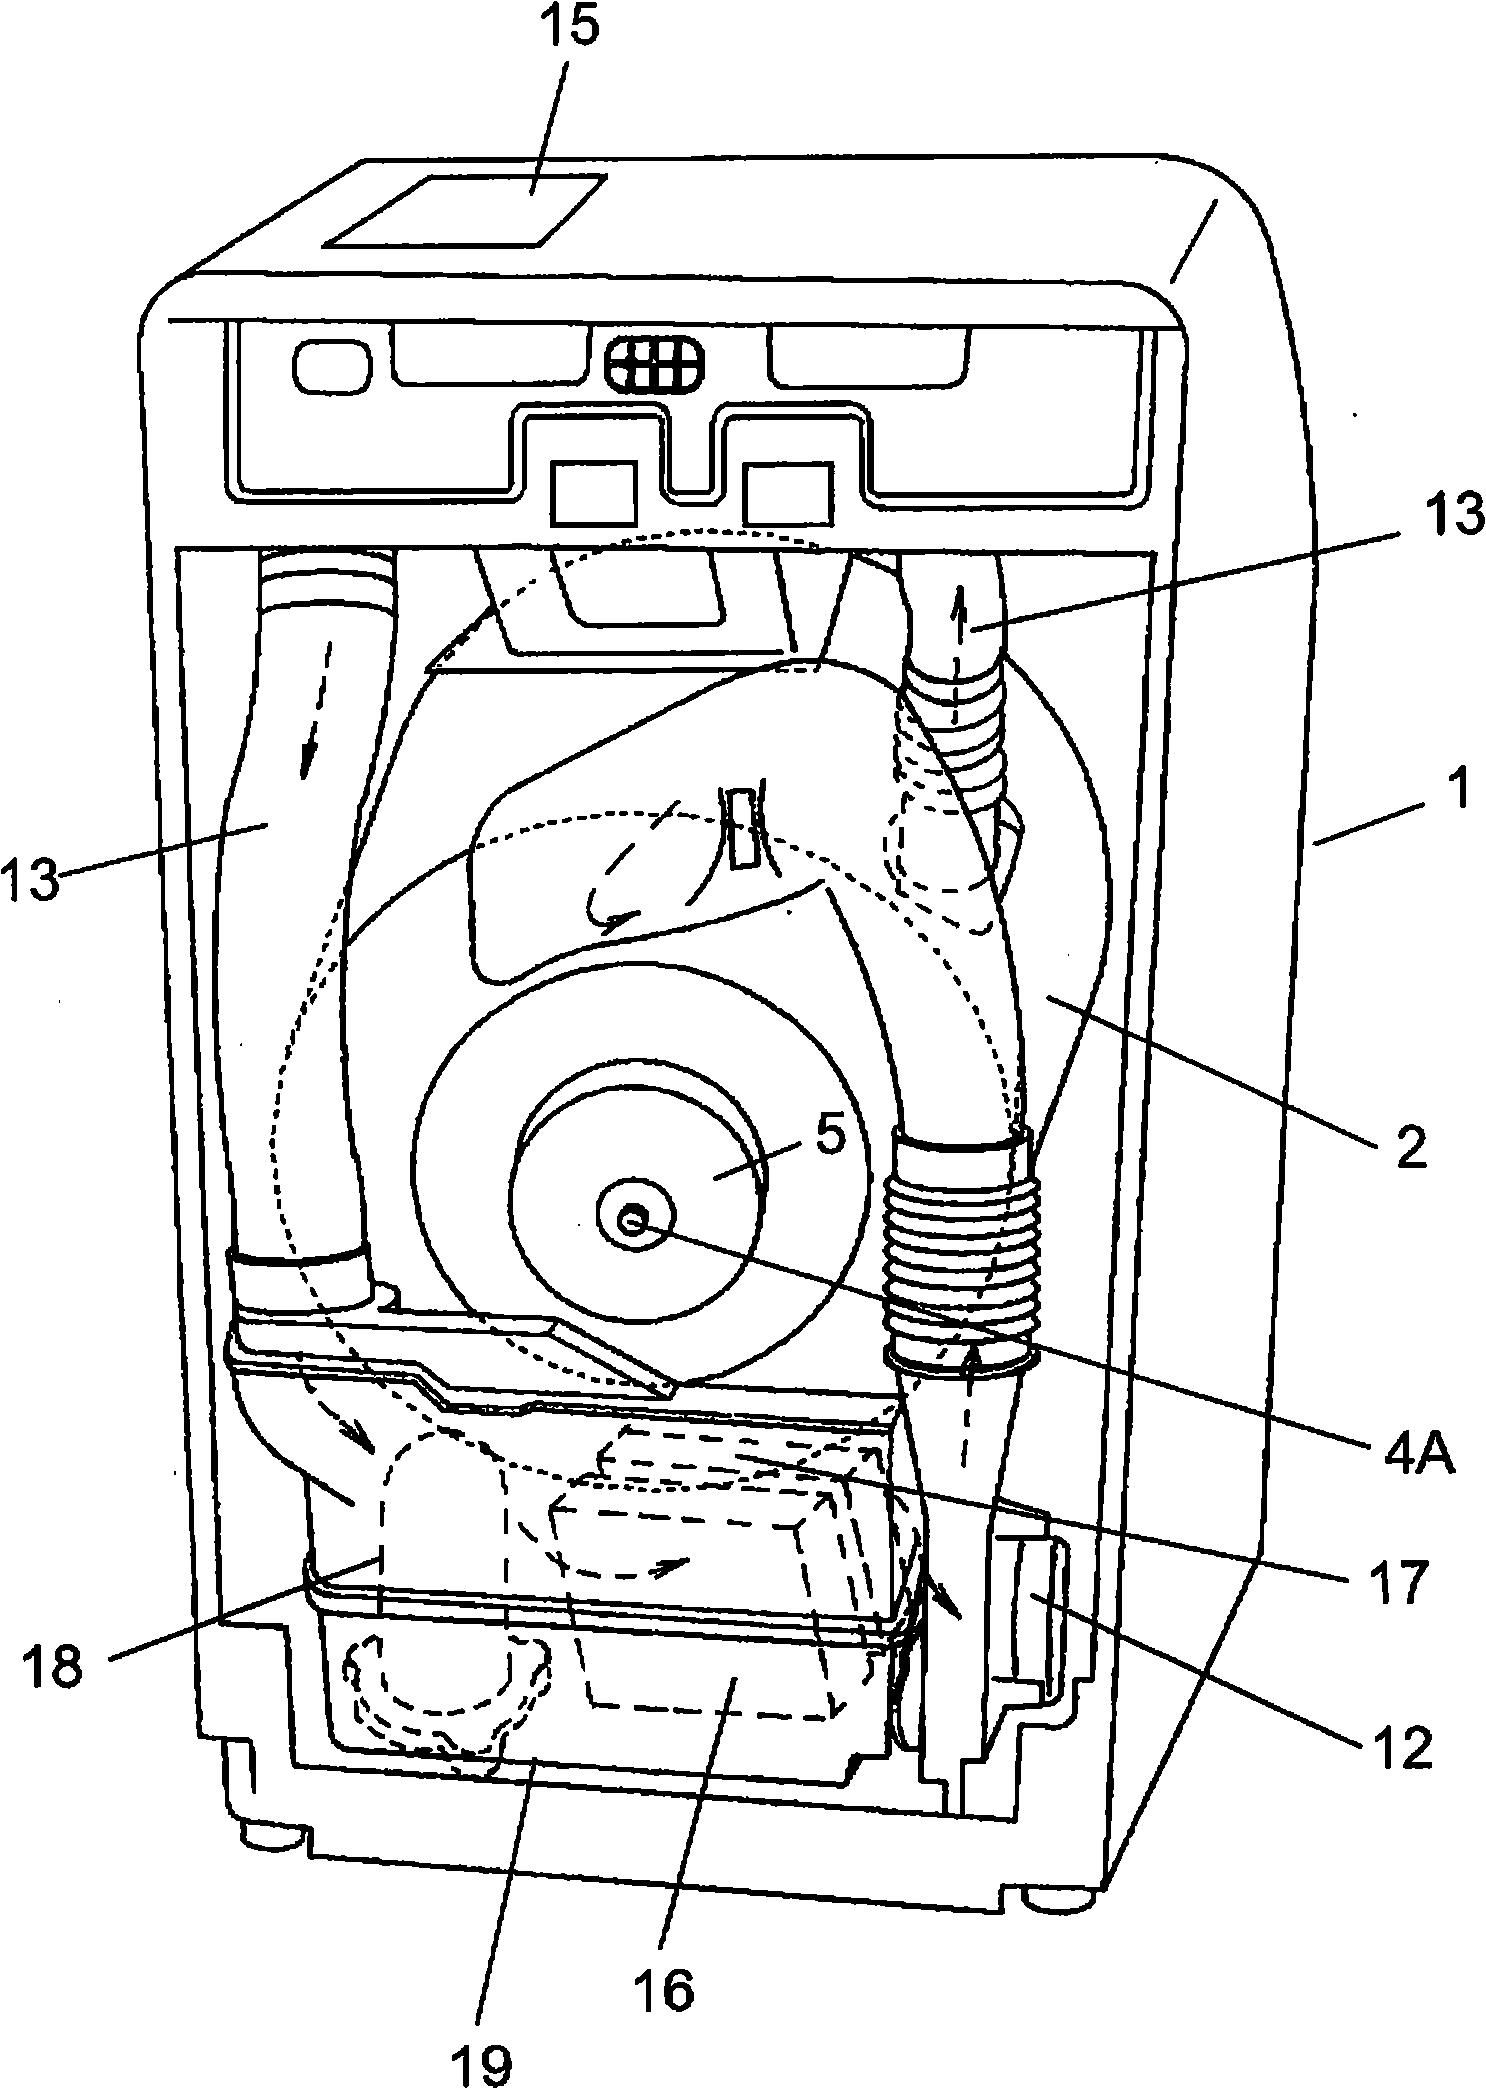 Drum type washing machine